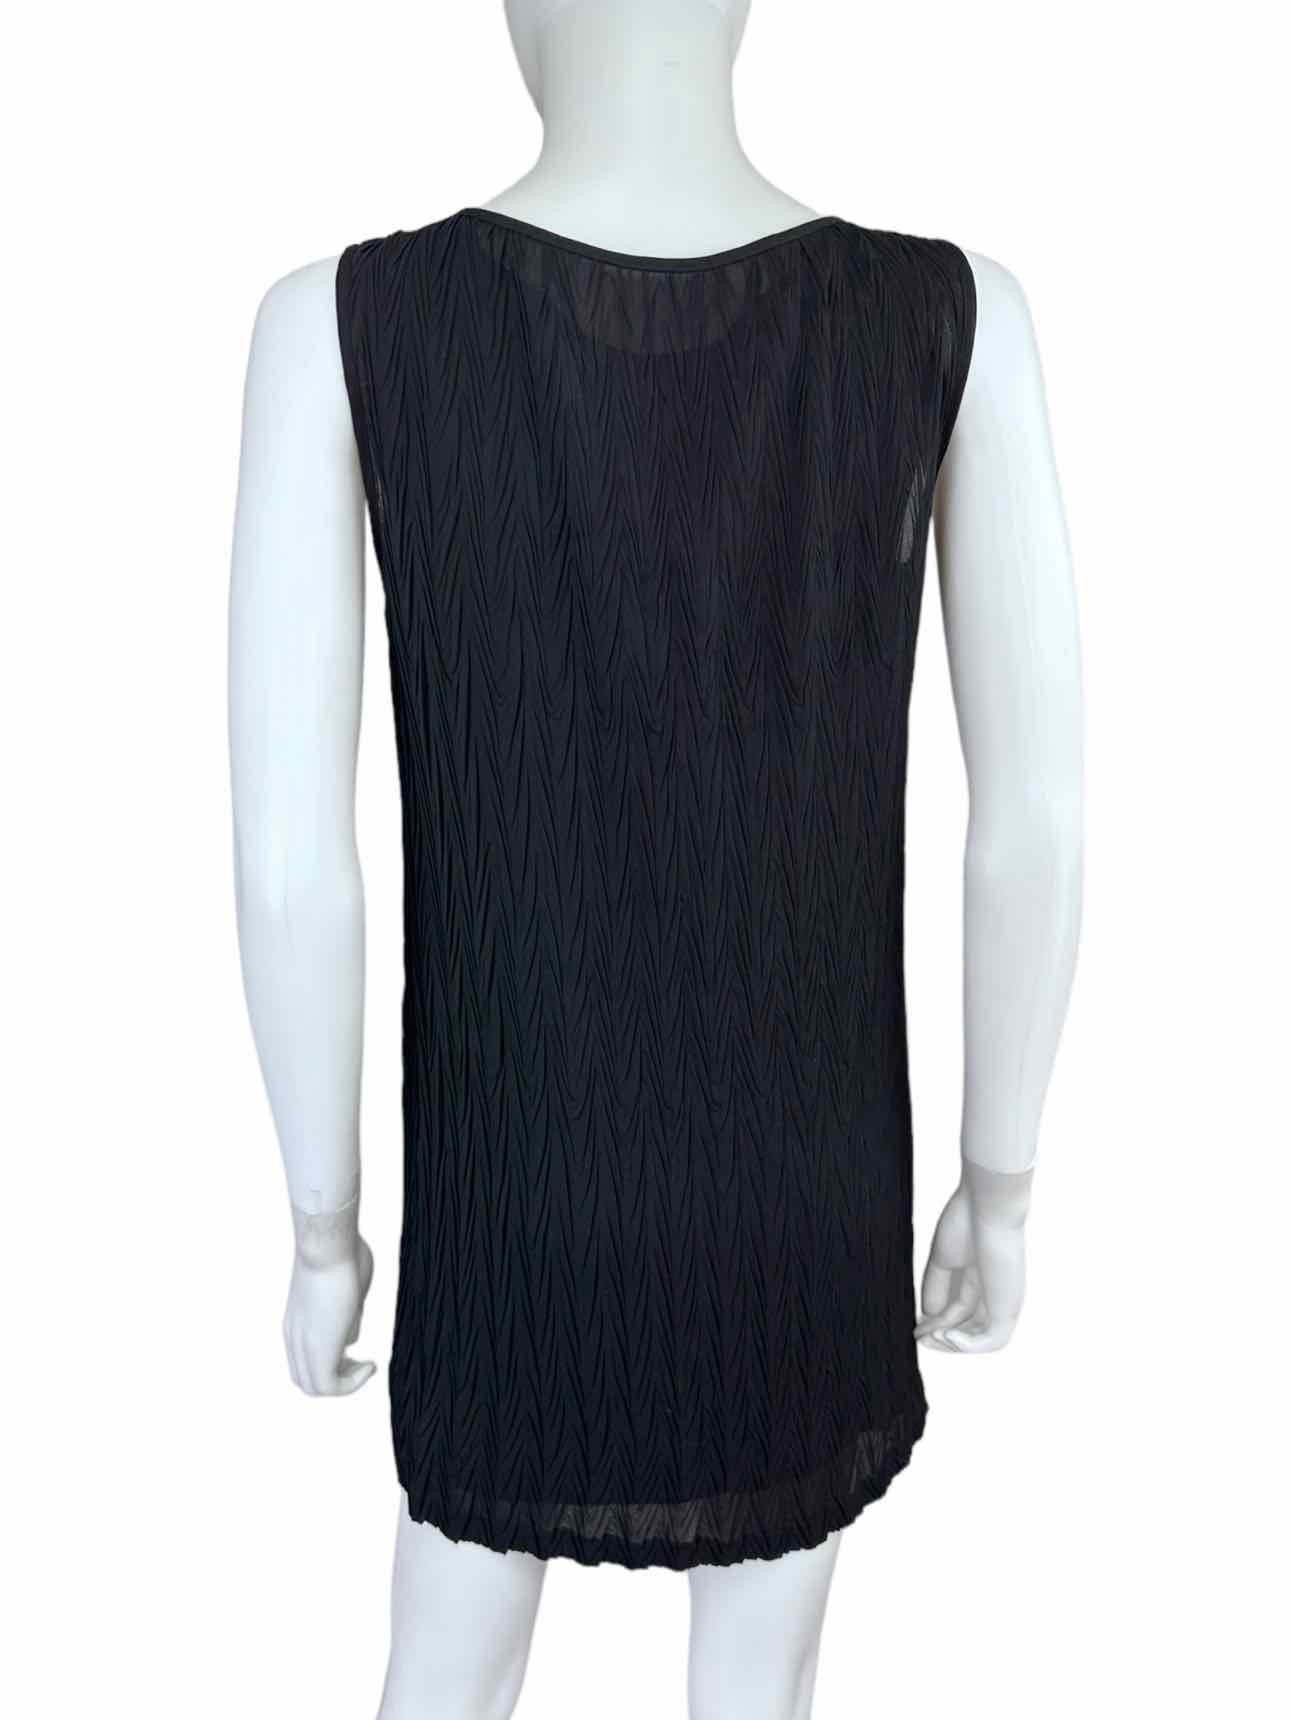 Vivienne Tam Black Textured Pattern Dress Size 1